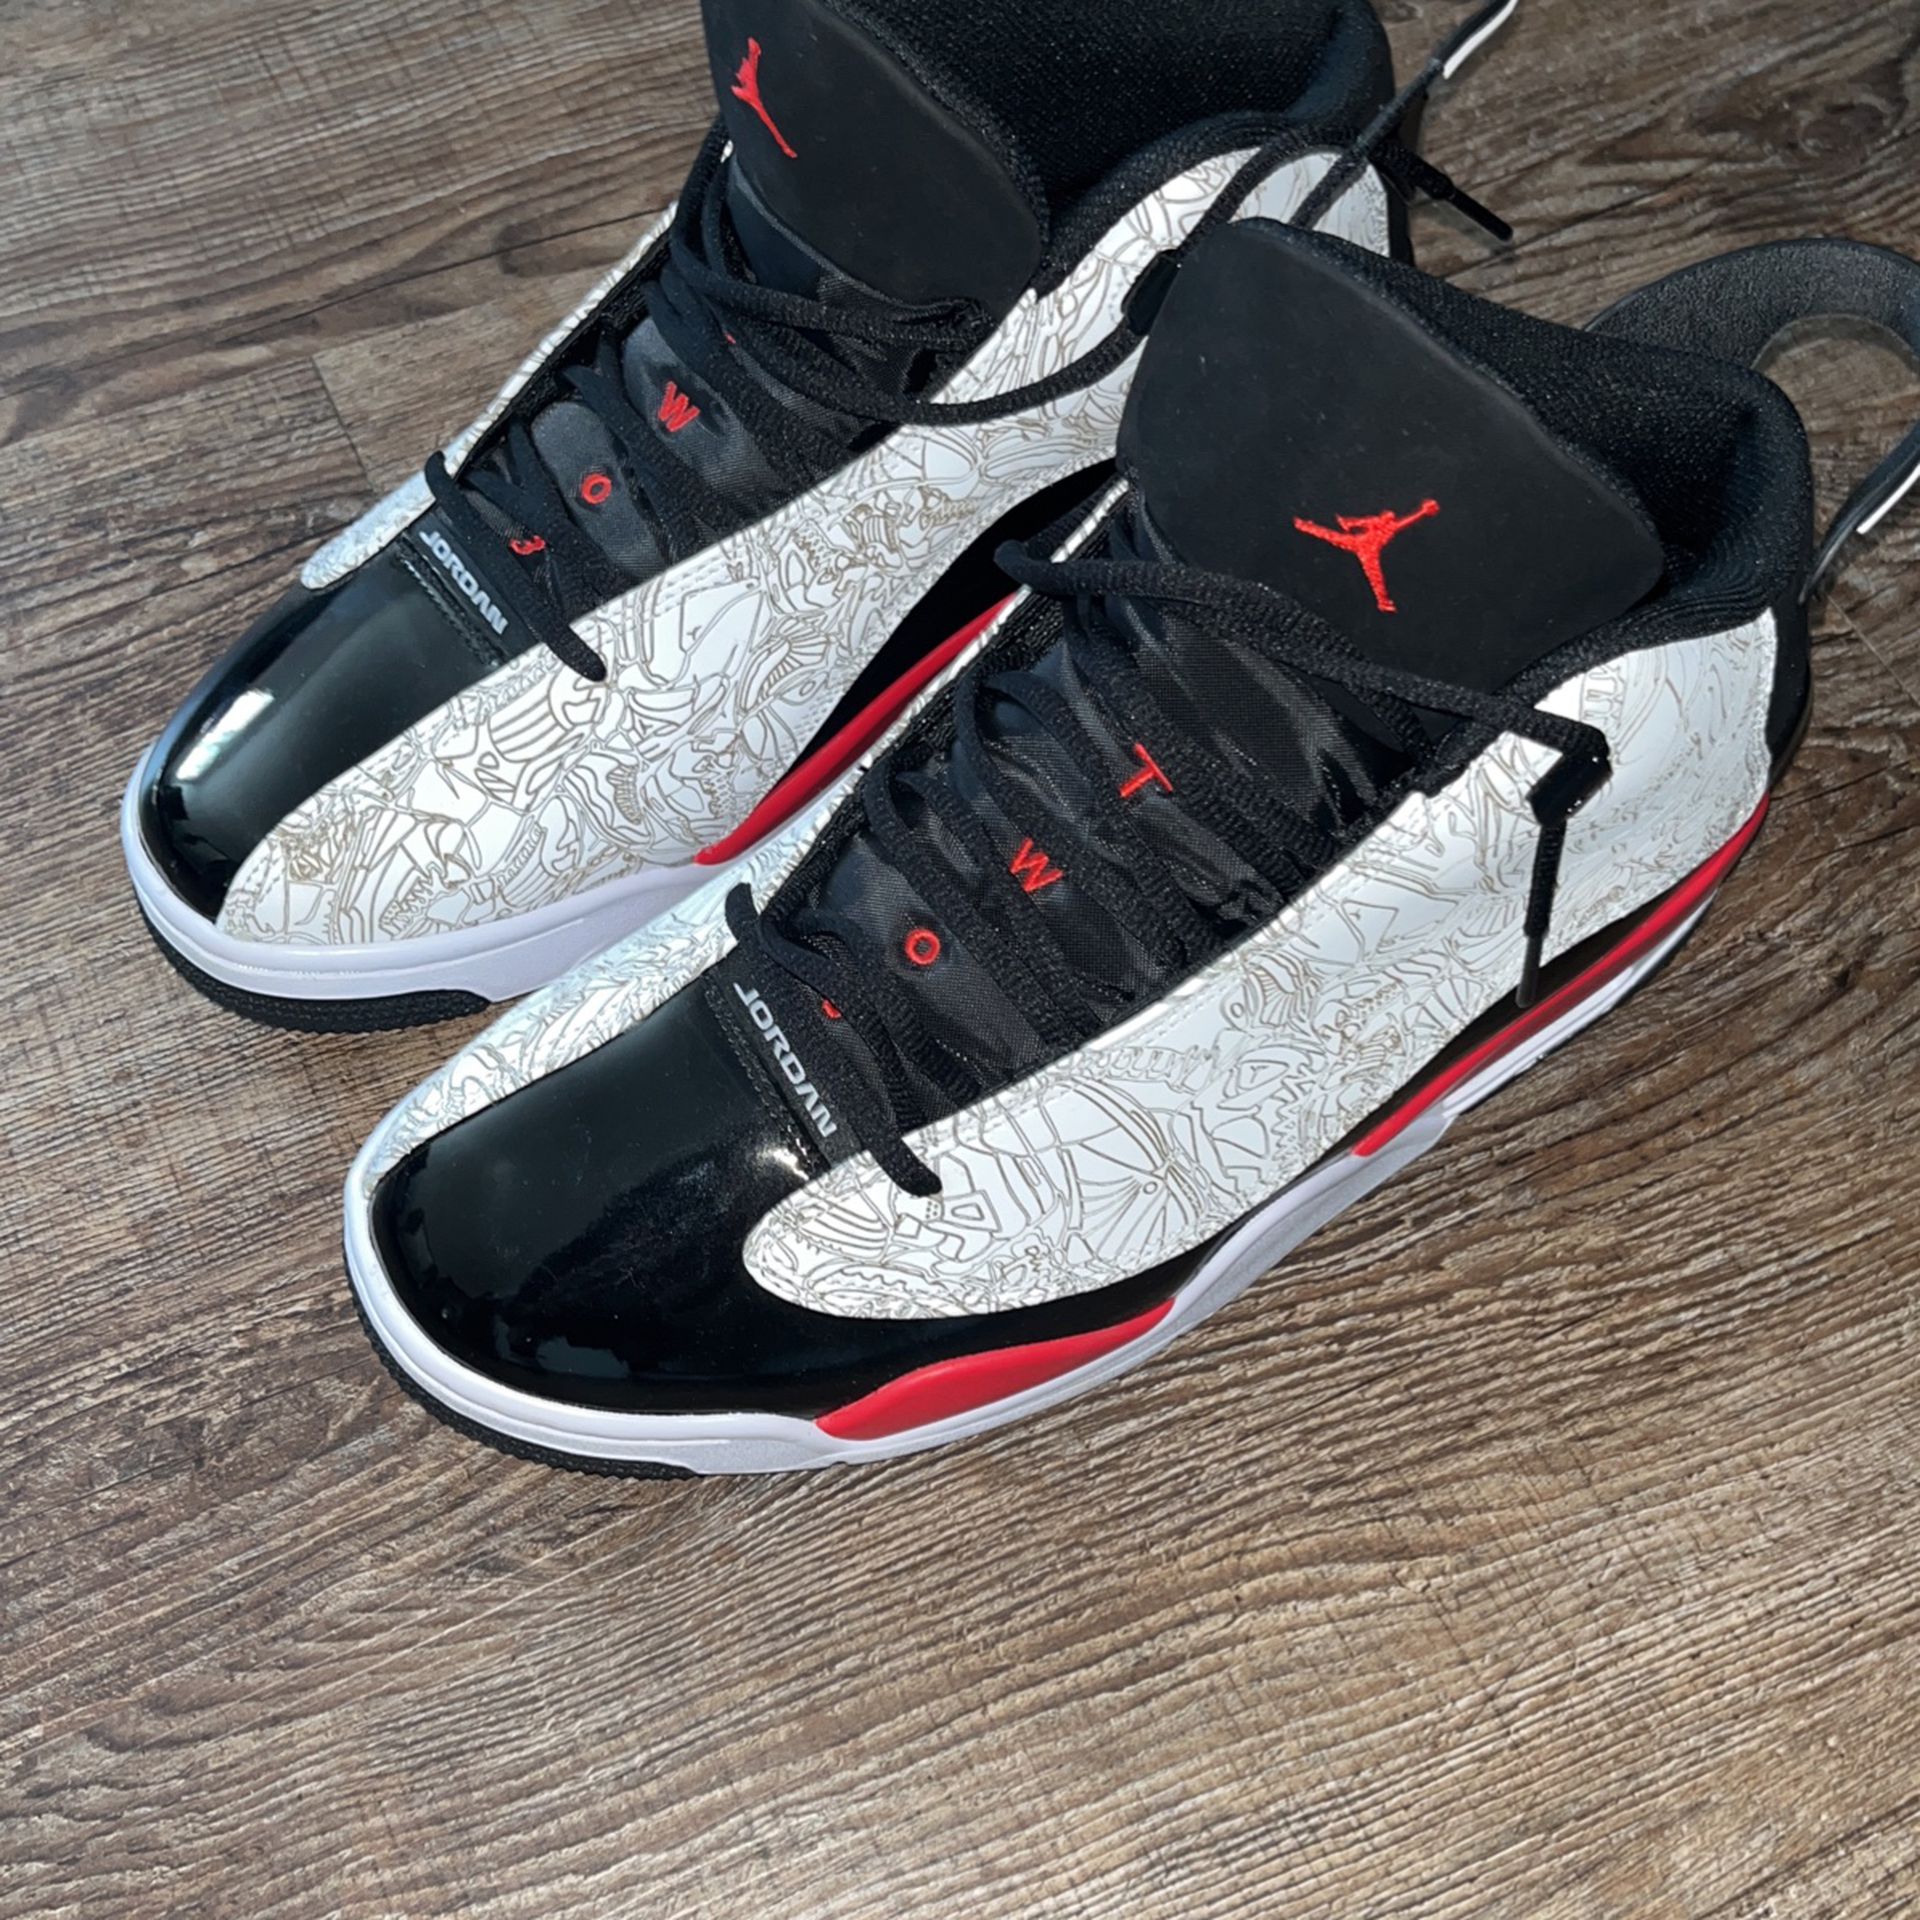 Men’s Nike Air Jordan Dub Zeros Size 12